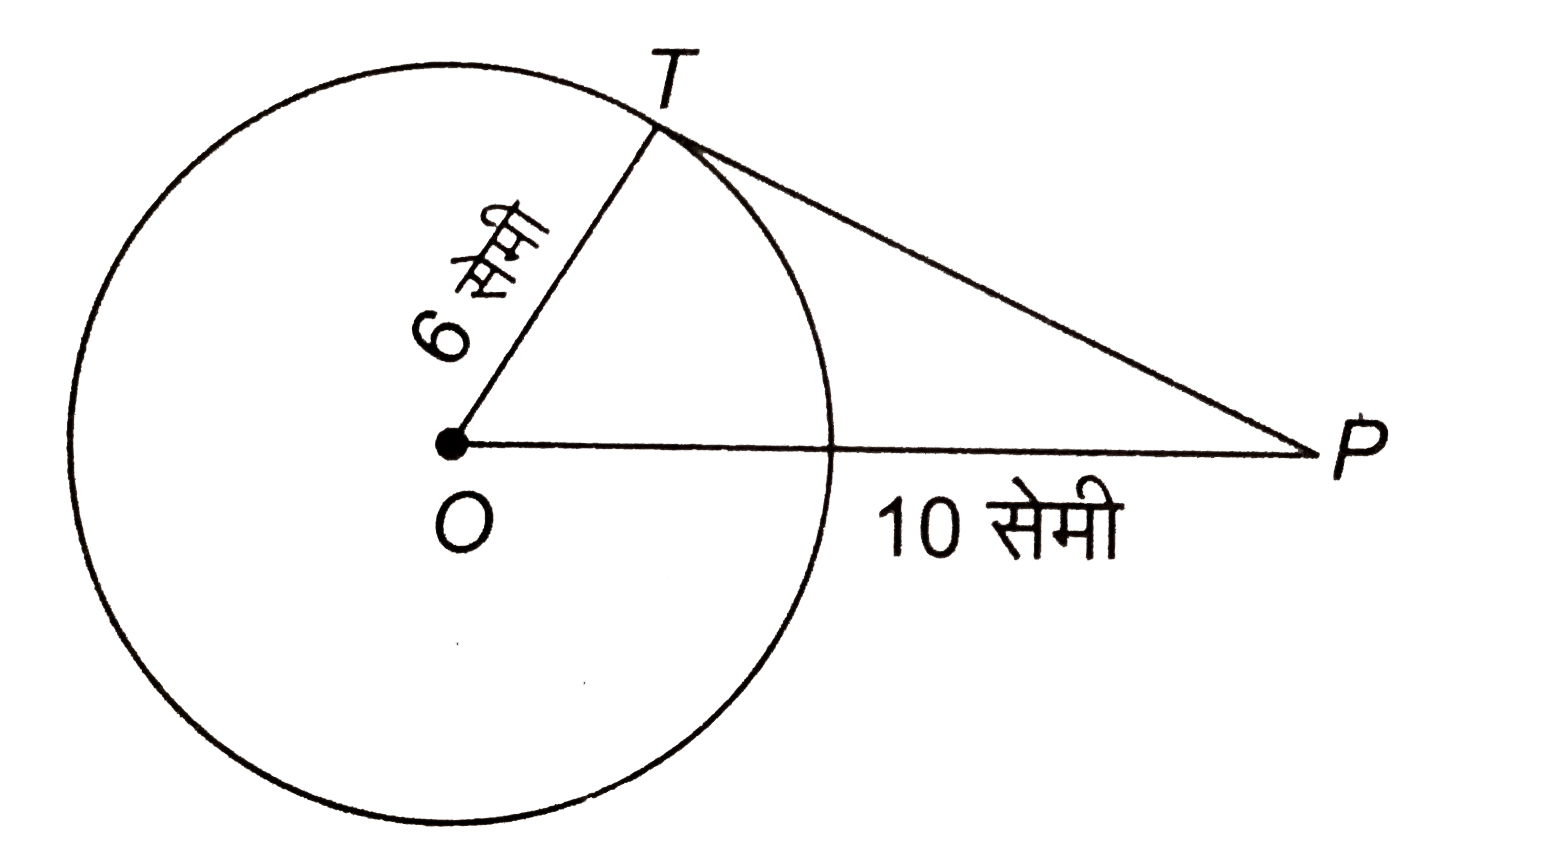 दी आकृति में, O केन्द्र के वृत्त में PT स्पर्श रेखा है। यदि OT = 6 सेमी और OP =10 सेमी है, तो स्पर्श रेखा PT की लम्बाई ज्ञात कीजिए।